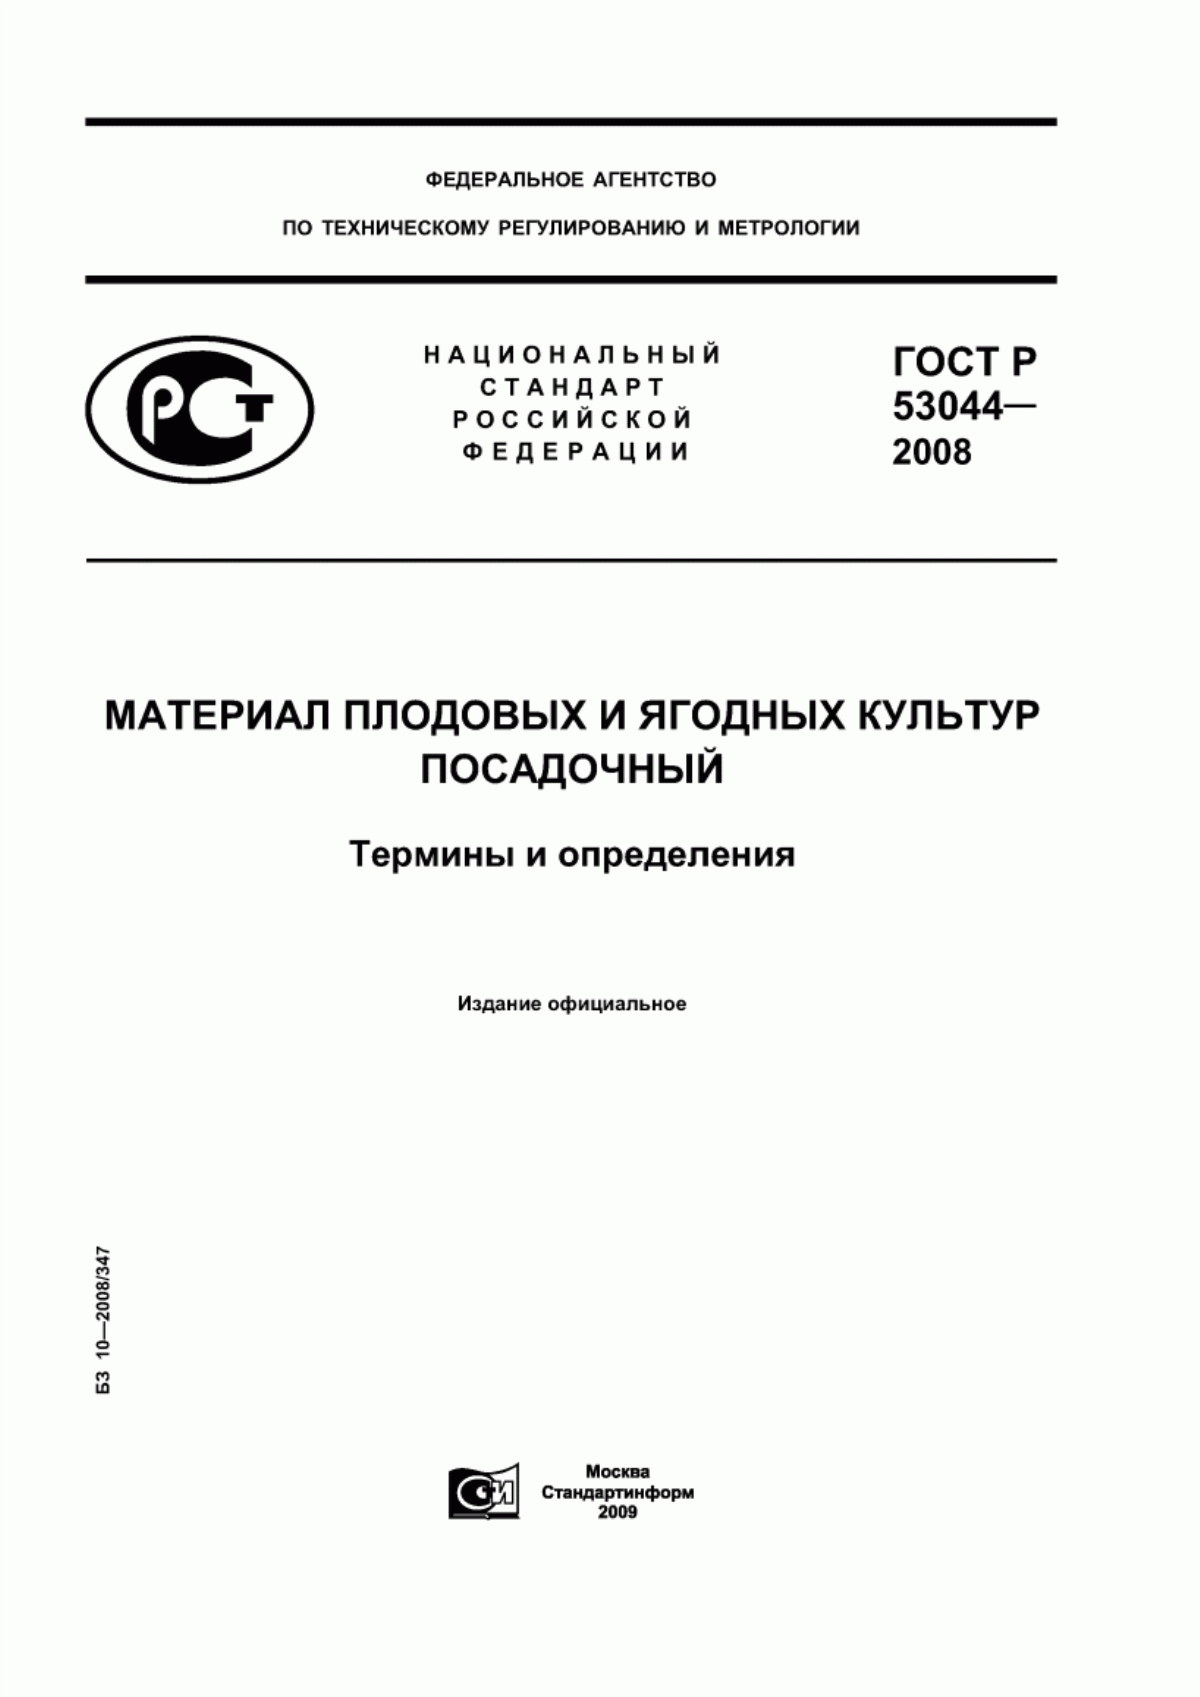 ГОСТ Р 53044-2008 Материал плодовых и ягодных культур посадочный. Термины и определения